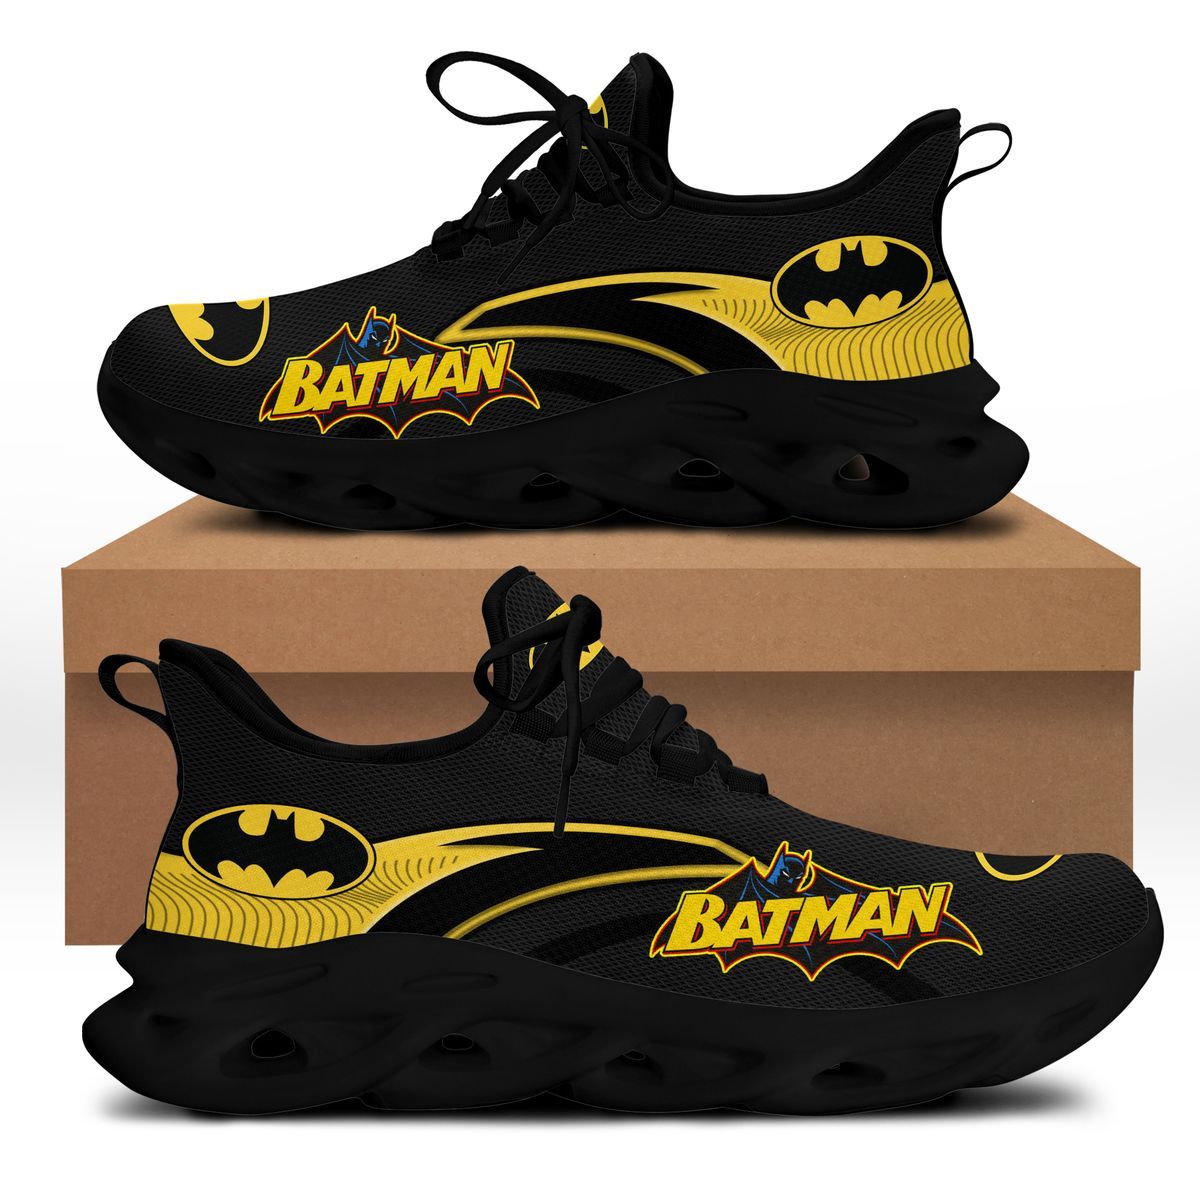 Batman Clunky Max soul shoes 3